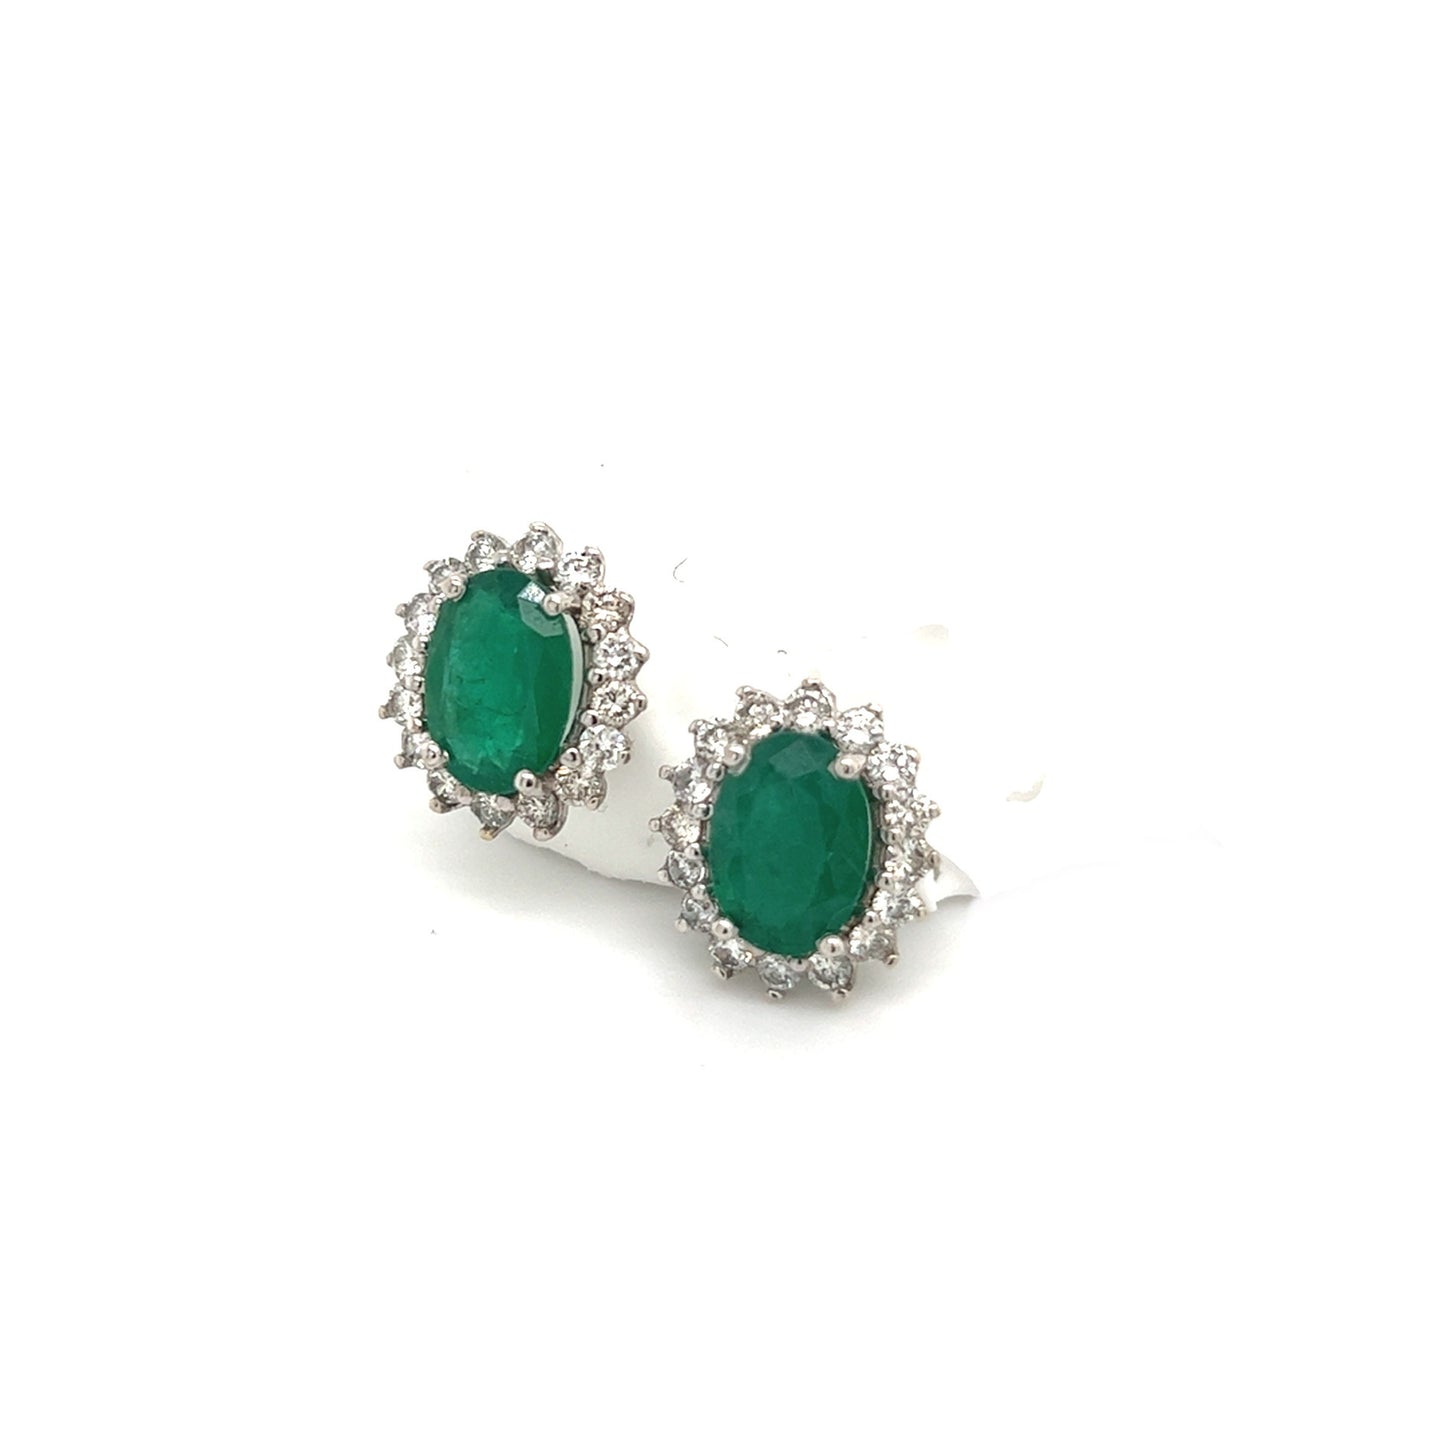 Natural Emerald Diamond Earrings 14k Gold 2.87 TCW Certified $6,950 211888 - Certified Fine Jewelry